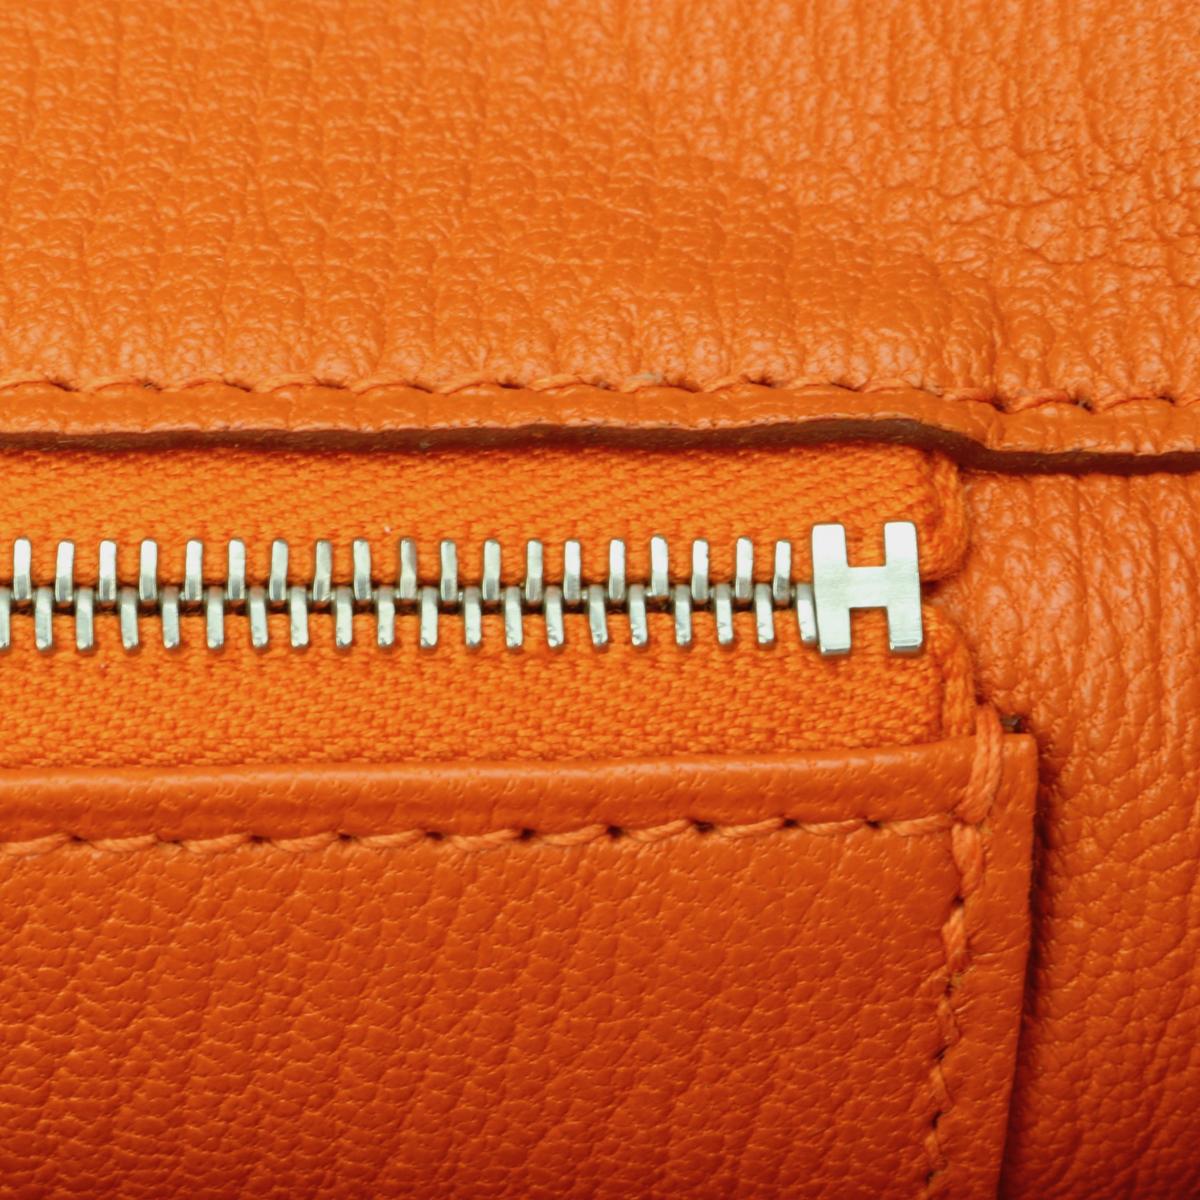 Hermès Birkin Bag 35cm Orange Togo Leather with Palladium Hardware Stamp M 2009 11